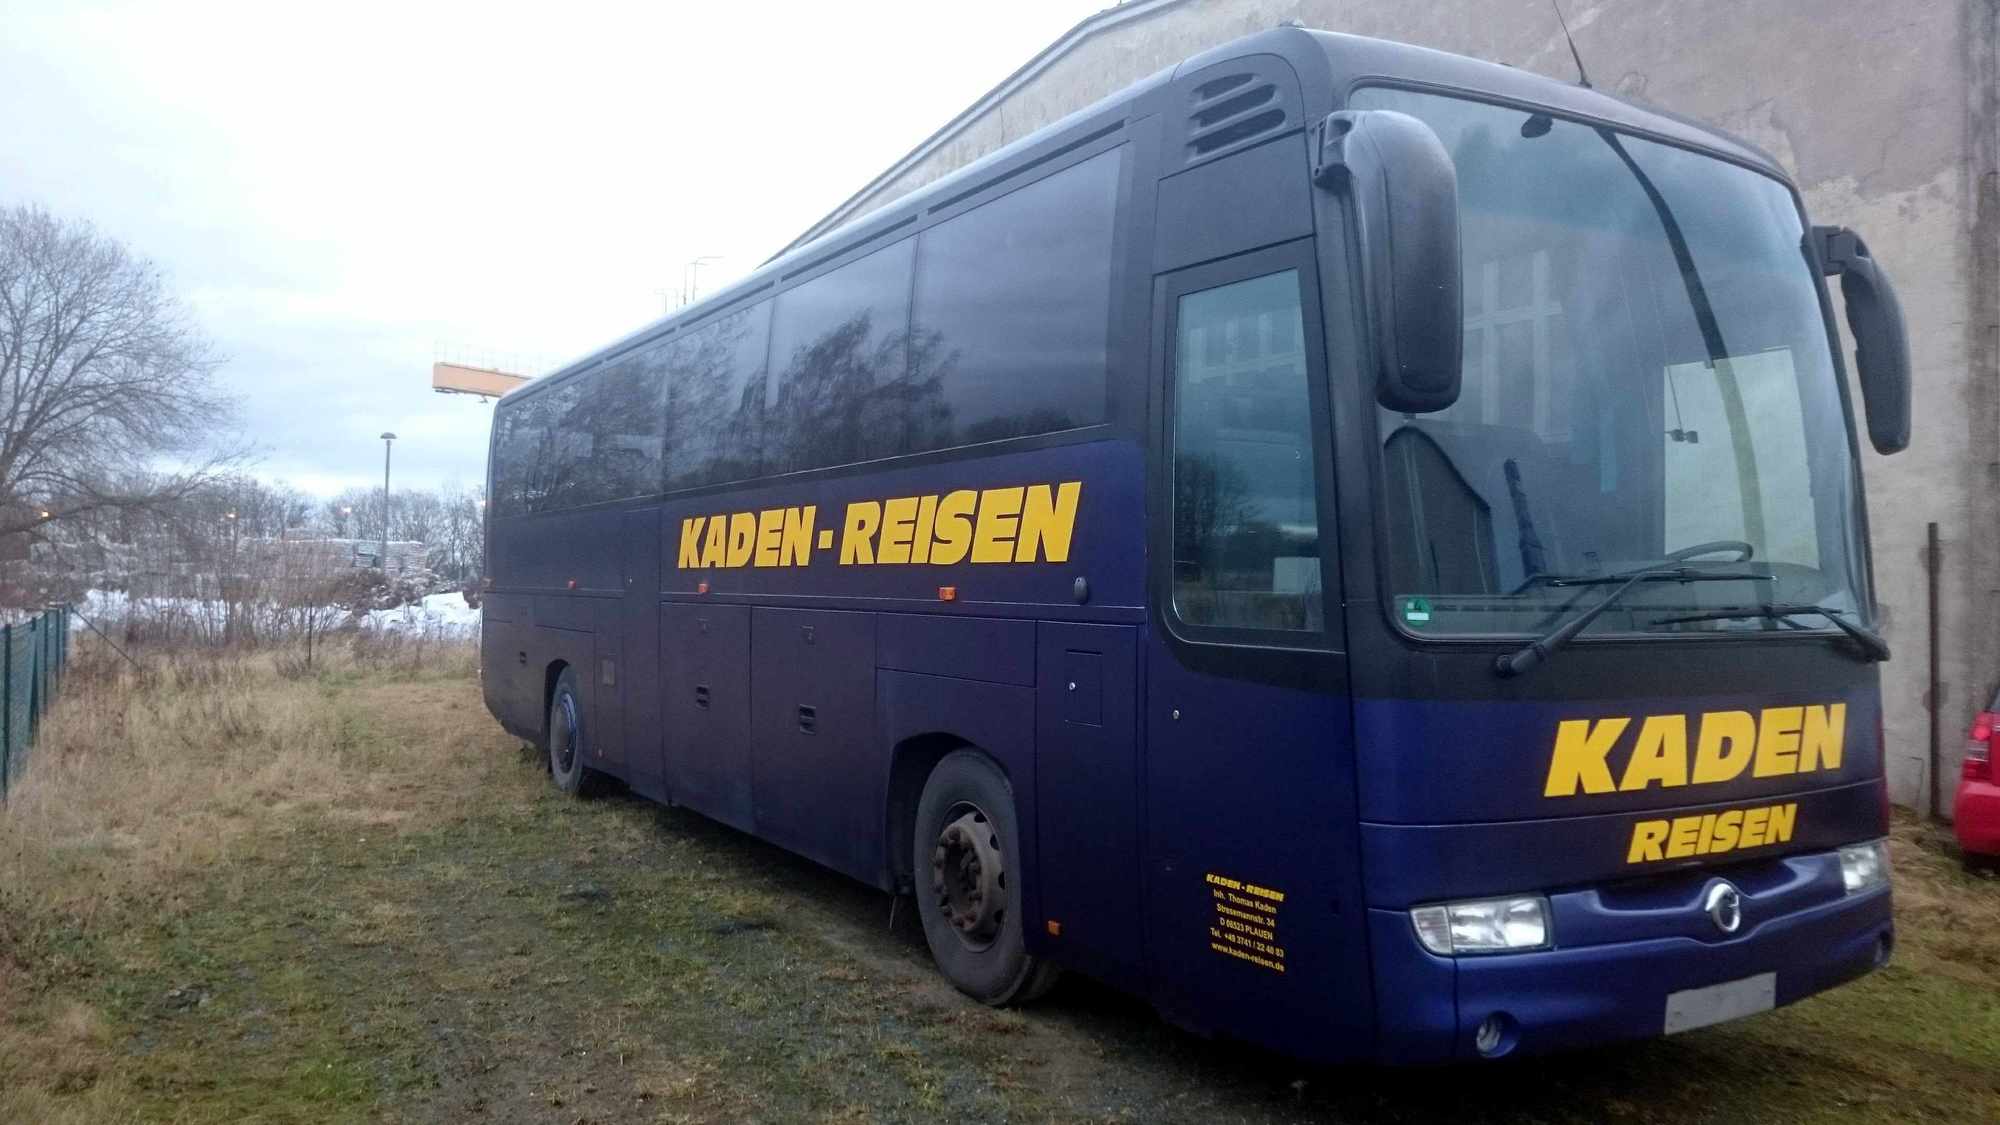 Kaden-Reisen undefined: photos 1